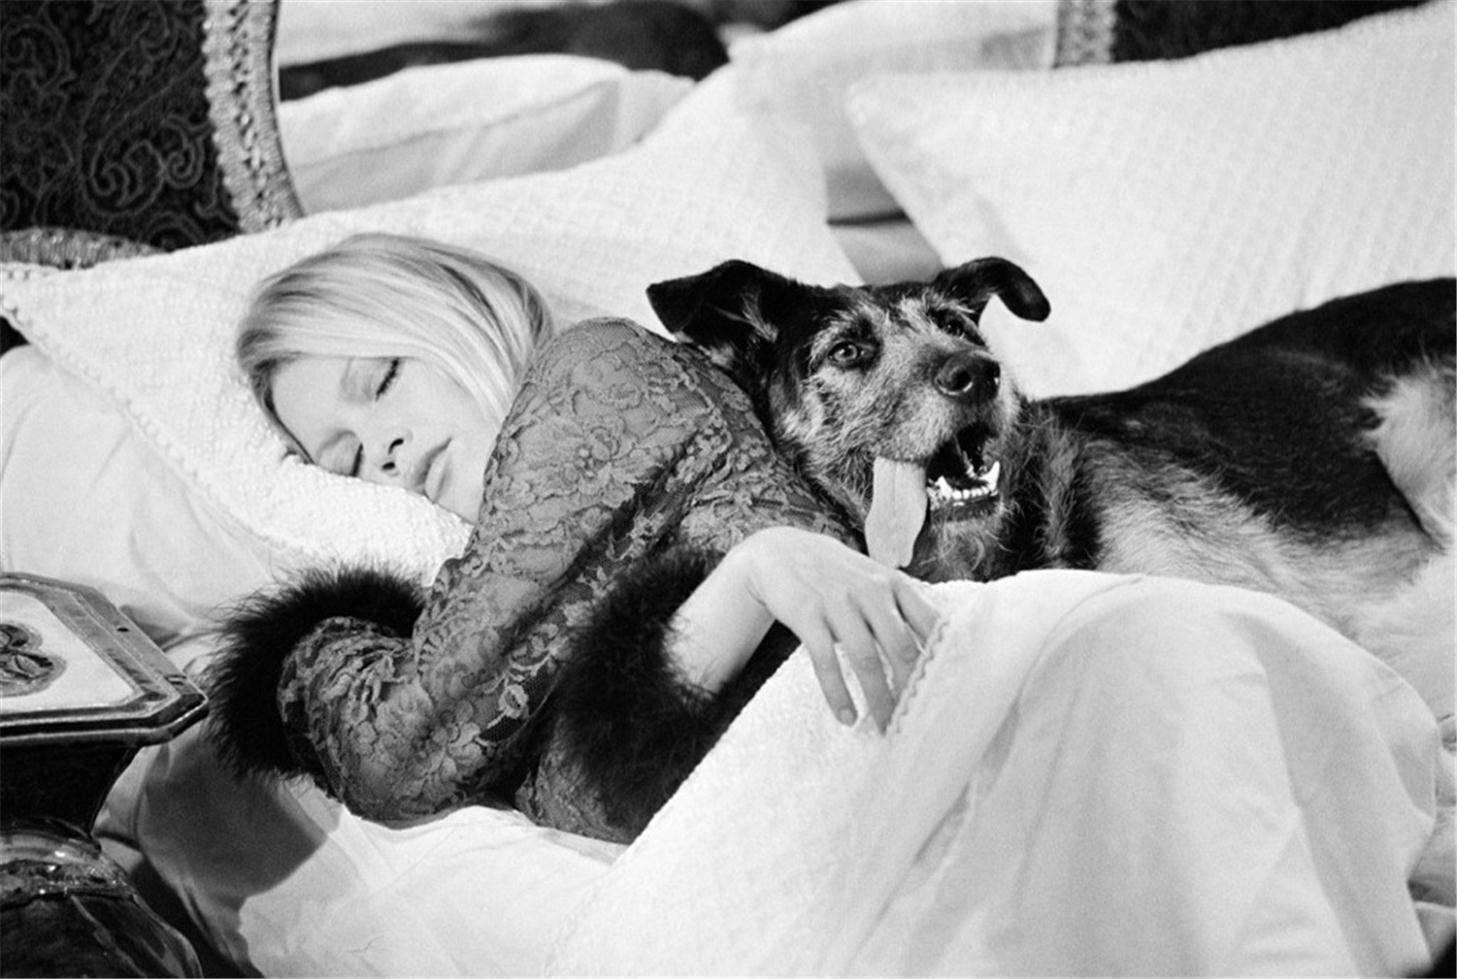 Brigitte Bardot mit Hund, am Set von Les Novices (mitunterzeichnet)
Silber-Gelatine-Druck
Auflage von 50 Stück 
16 x 20 Zoll 
Signierte und nummerierte Auflage von 50 Stück
(selten)

Die französische Schauspielerin Brigitte Bardot bei den